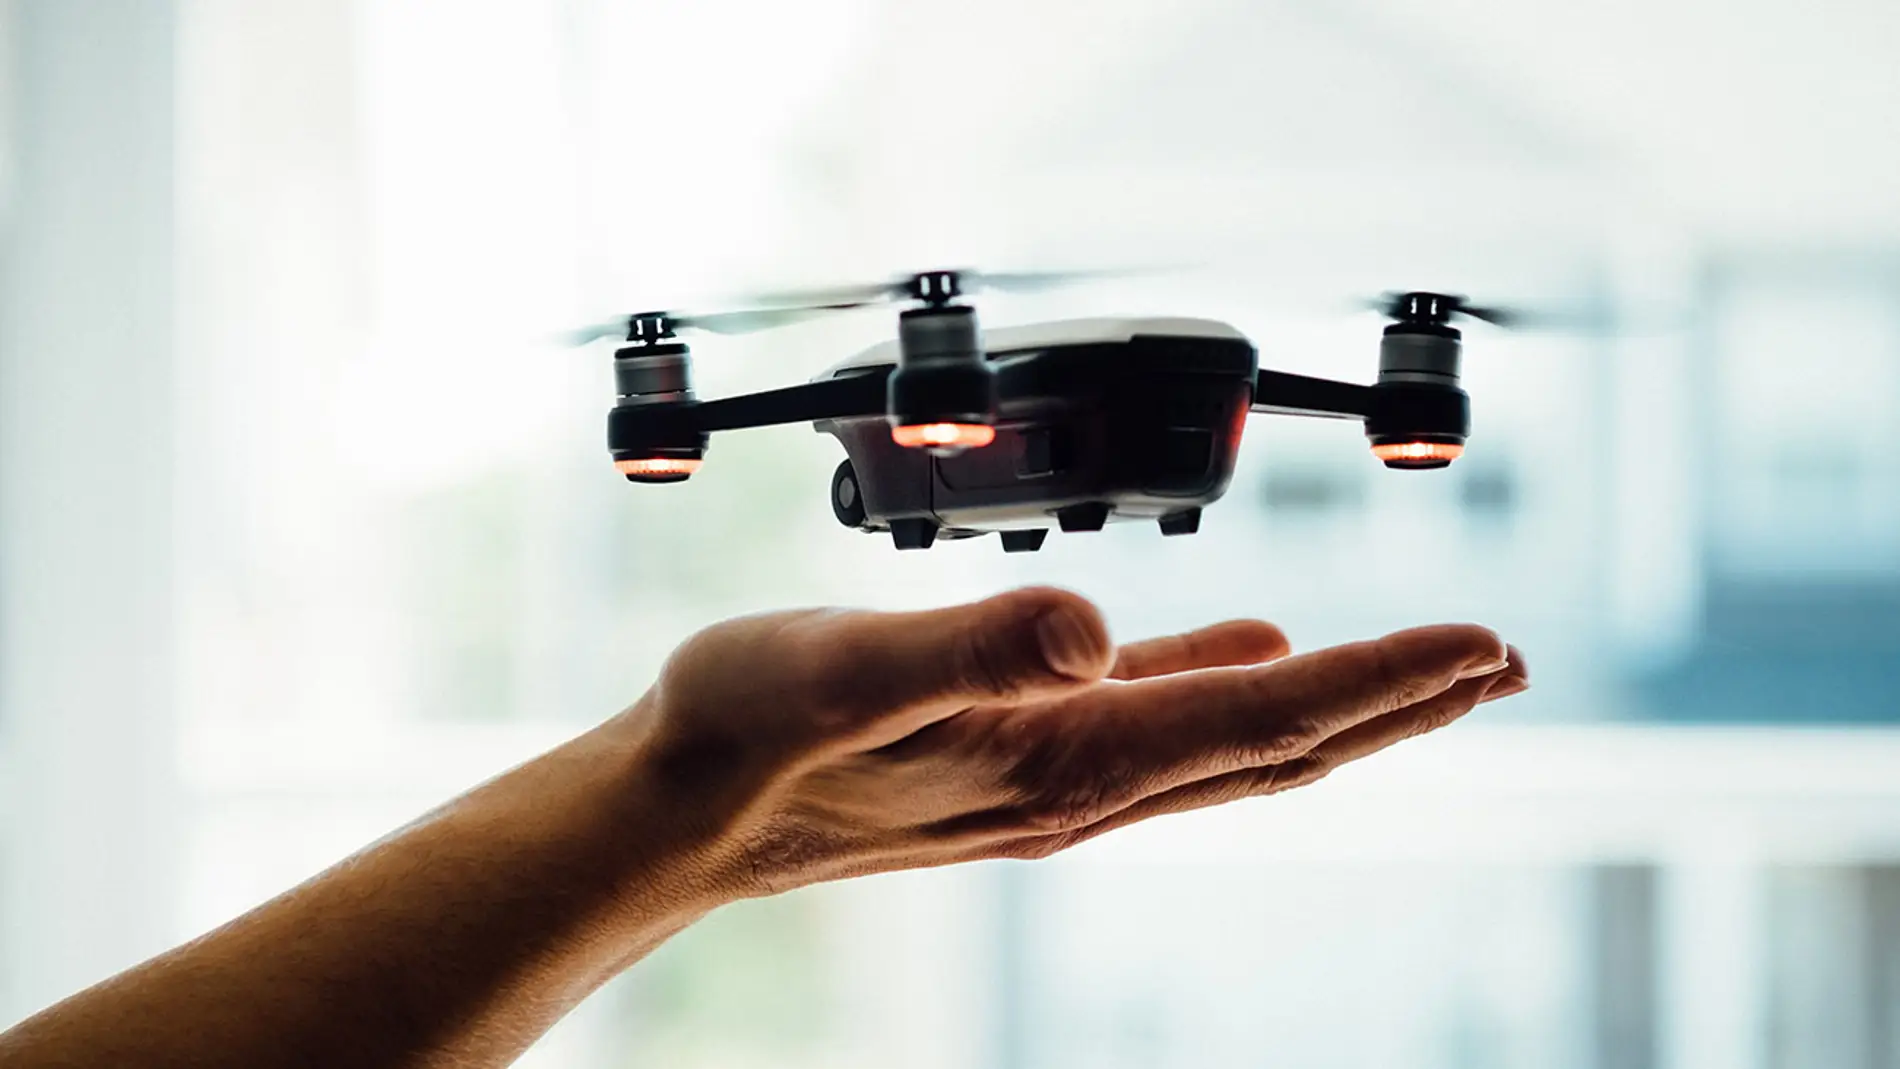 Apple podría estar desarrollando su propio dron para competir contra DJI